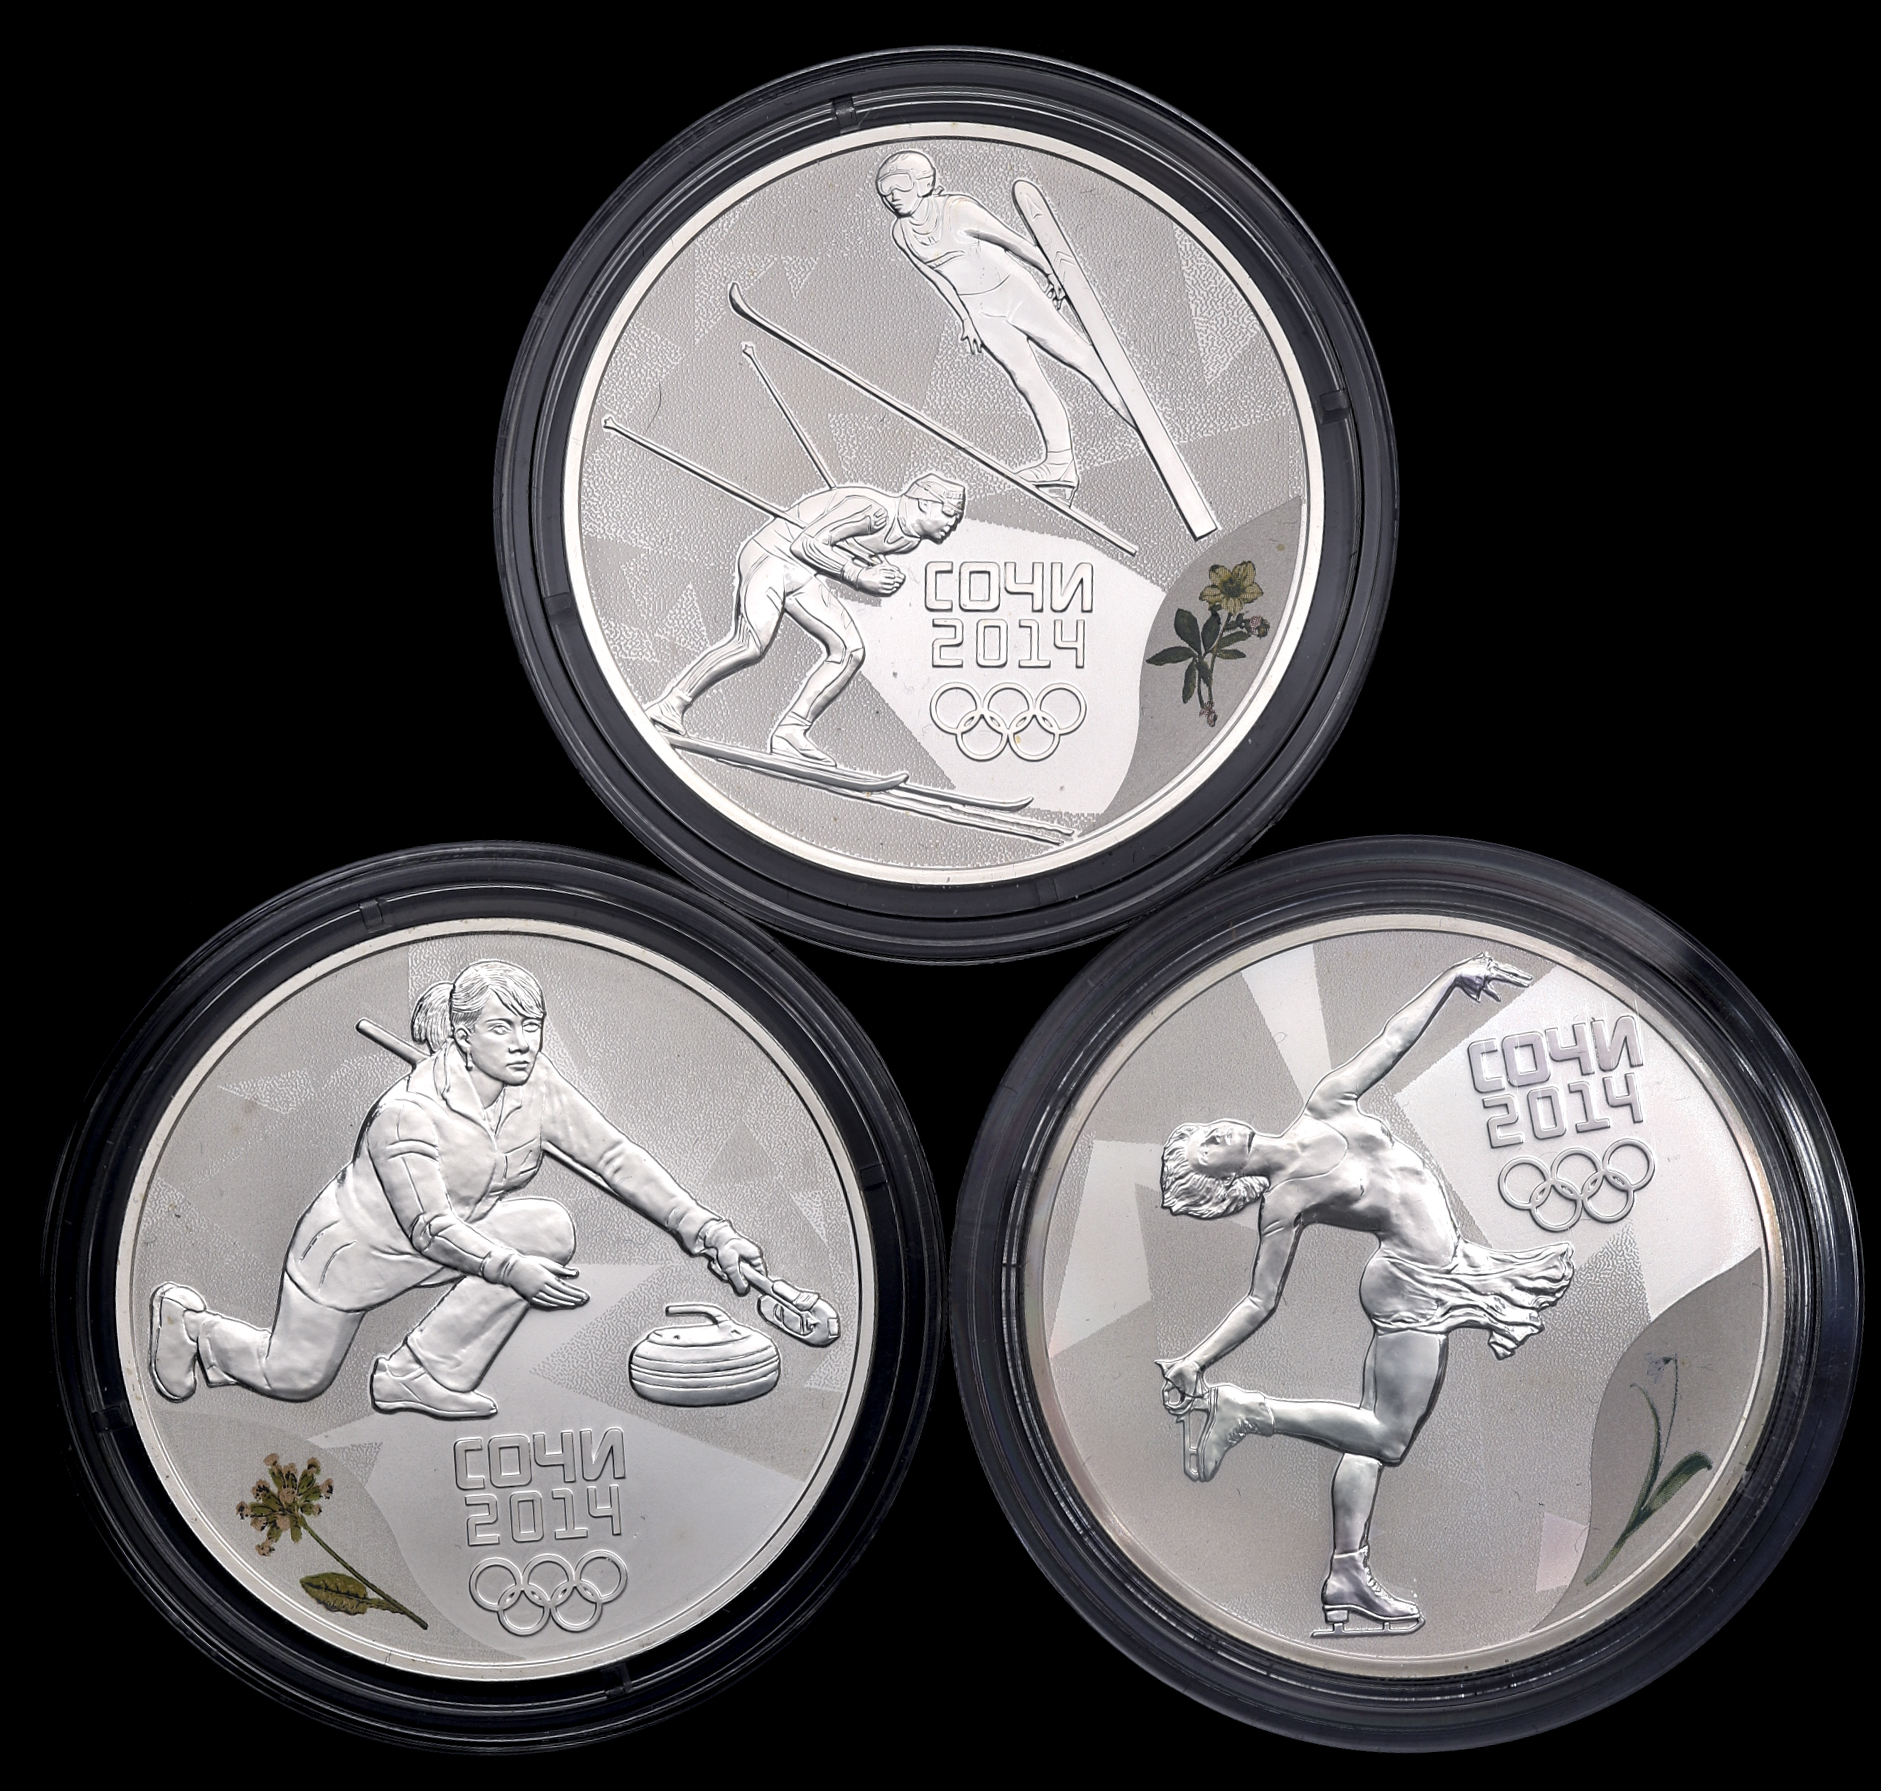 ソチオリンピック 記念金貨3種セット - その他